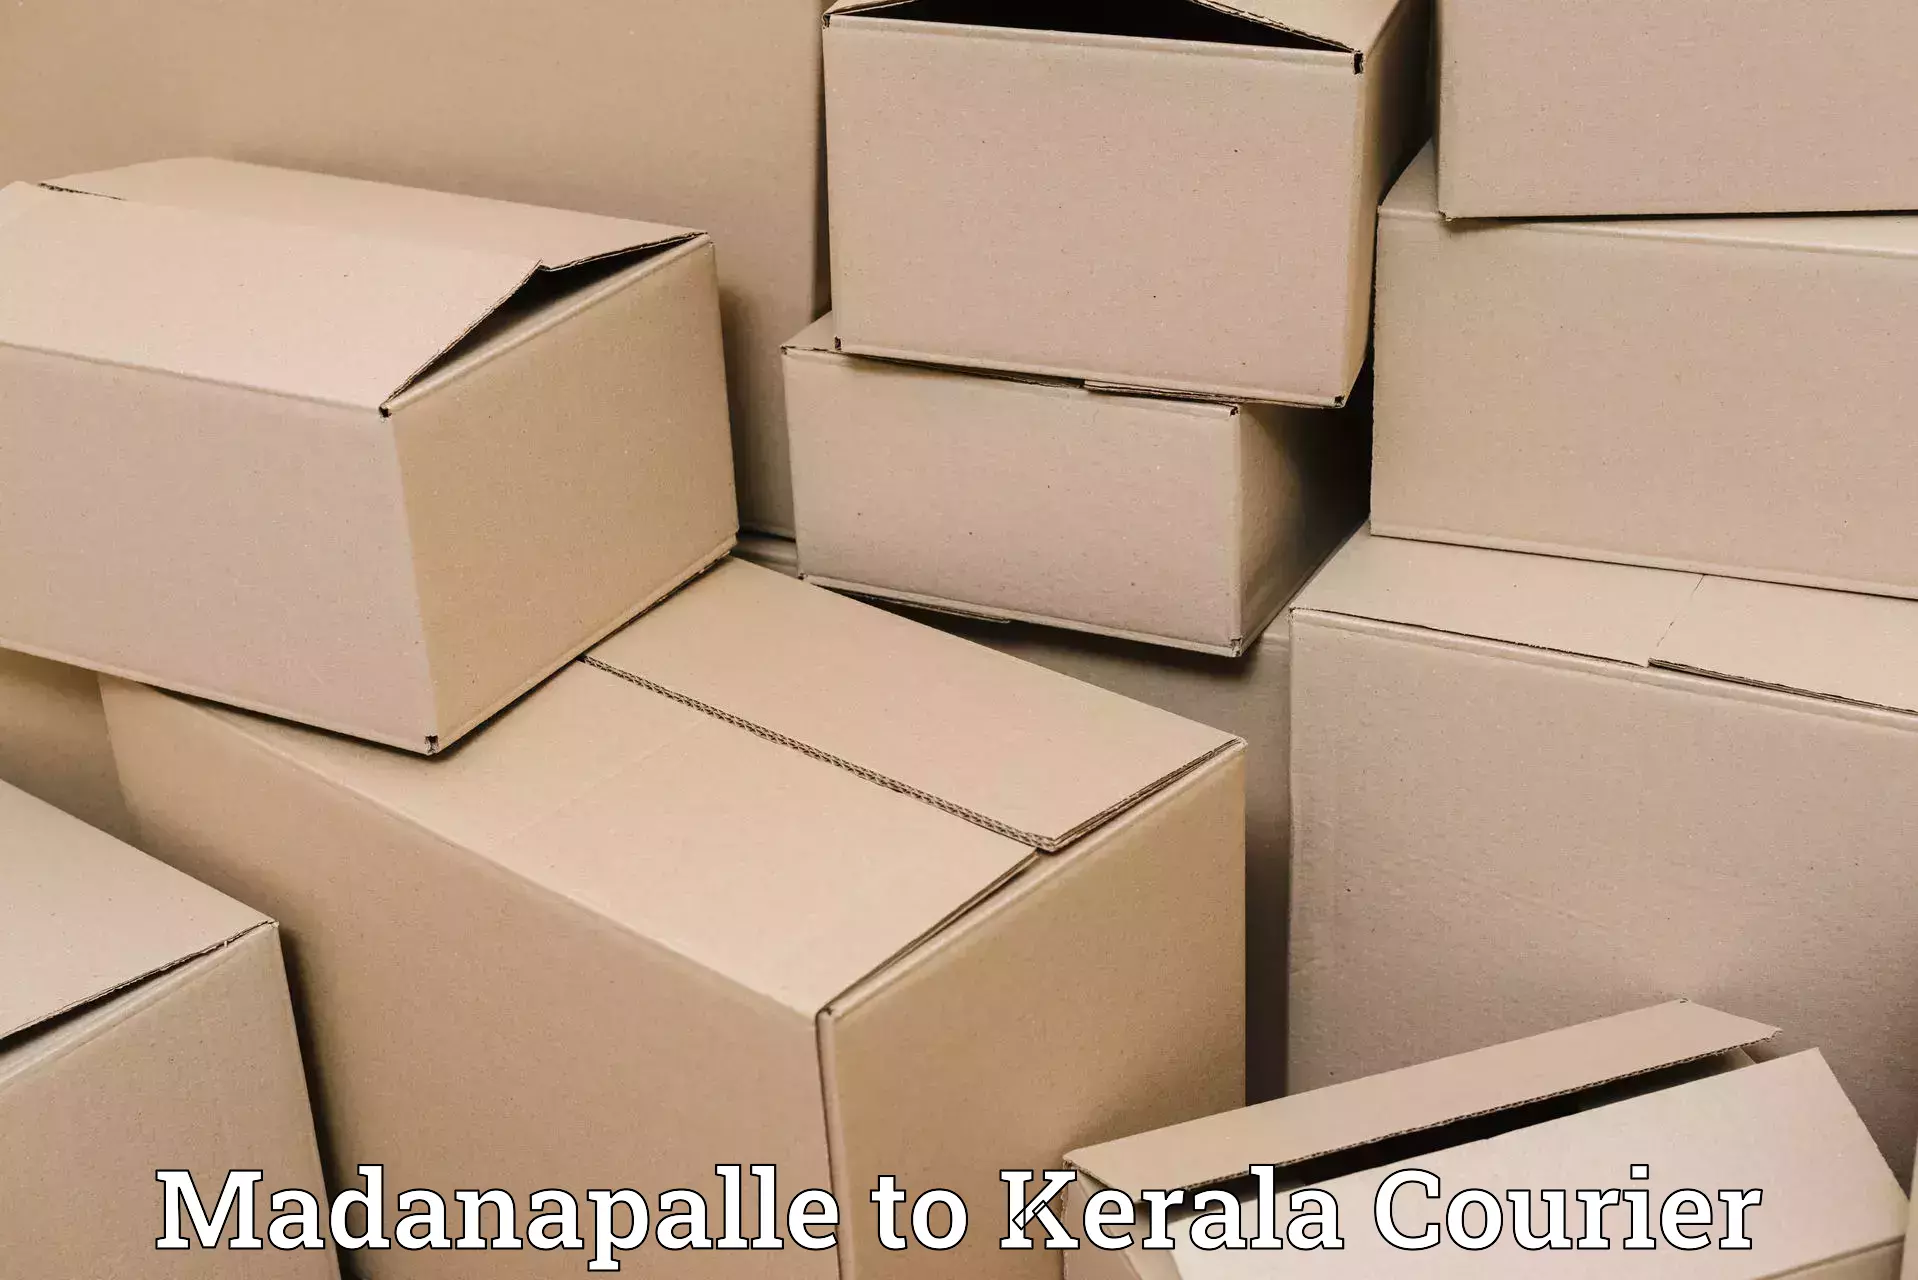 Flexible parcel services Madanapalle to Mundakayam